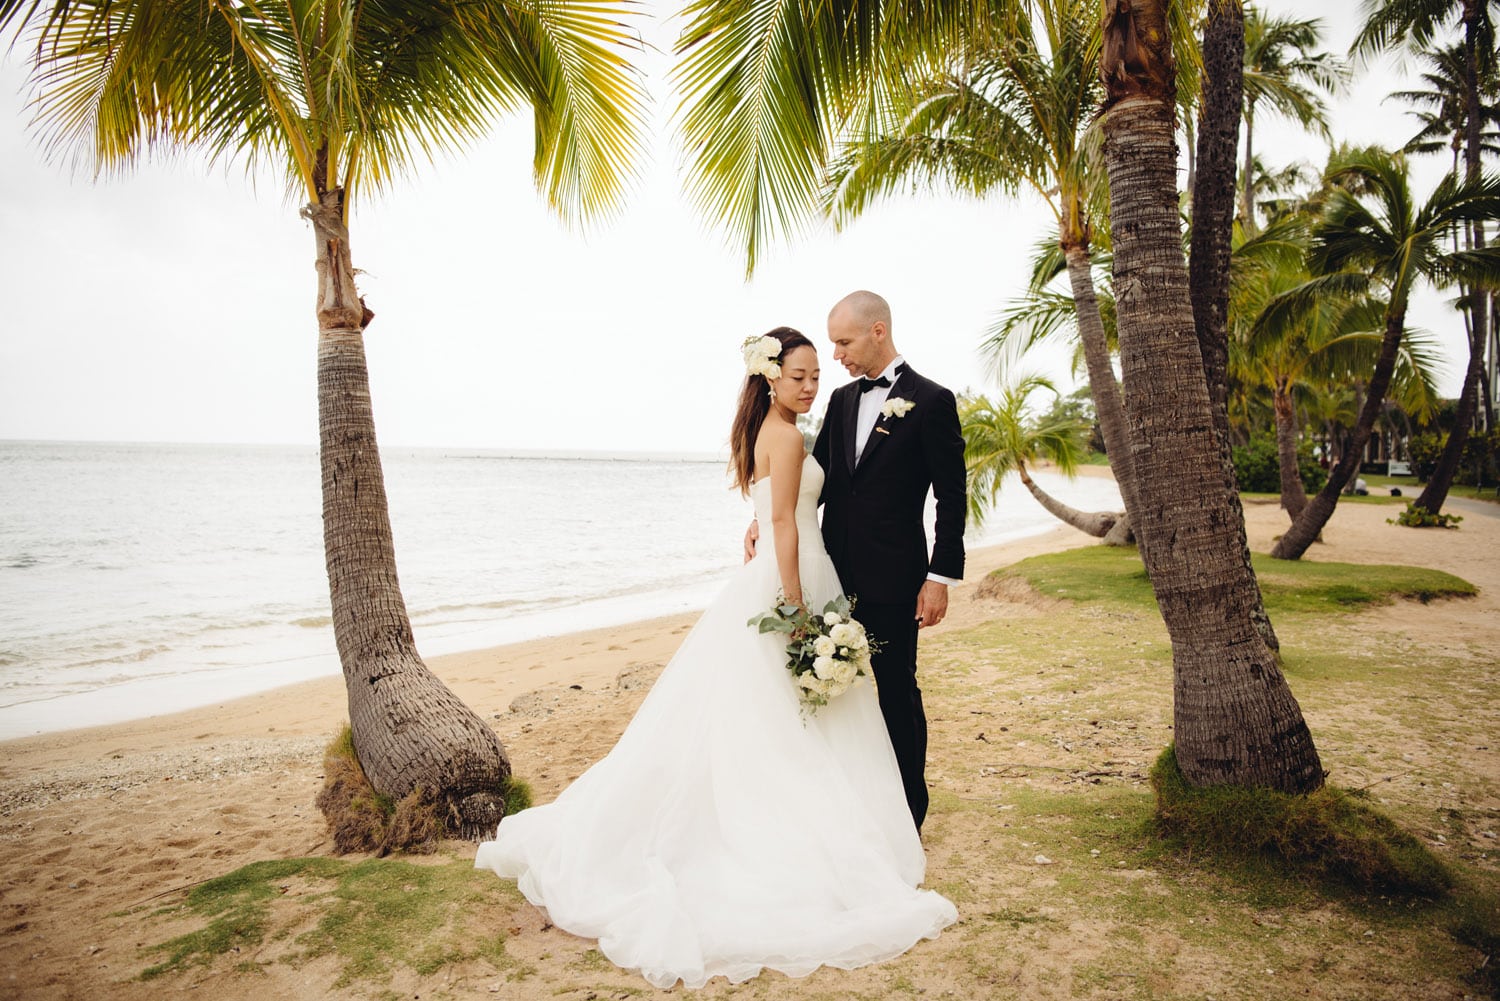 Miu William The Kahala Hotel Resort Oahu Hawaii Wedding